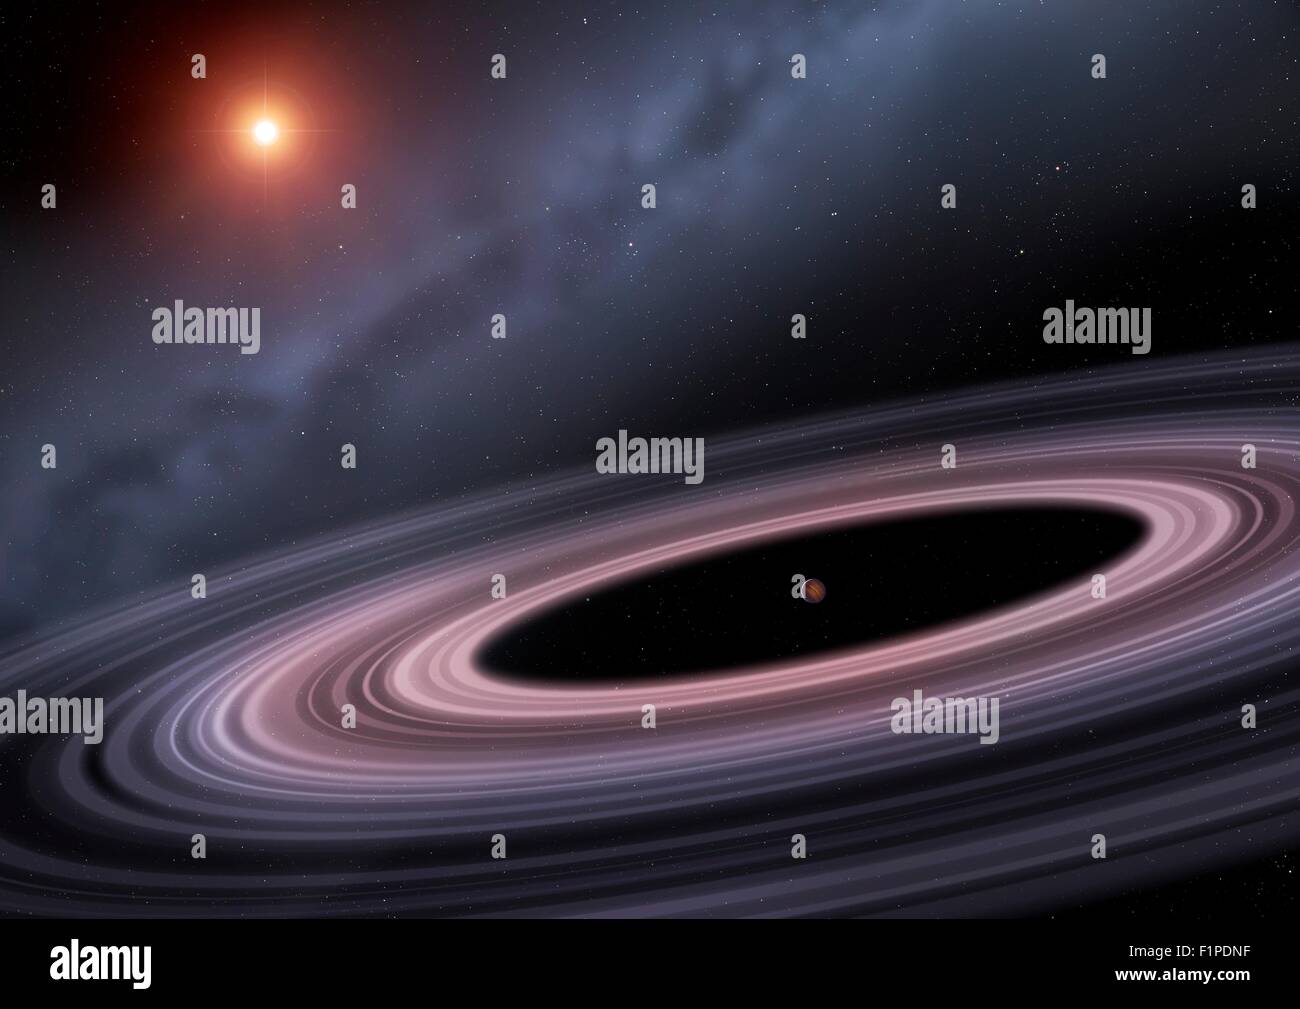 Gli astronomi hanno trovato qualcosa di interessante in orbita attorno alla stella sunlike 1SWASP J1407 420 anni luce di distanza nella costellazione di Foto Stock